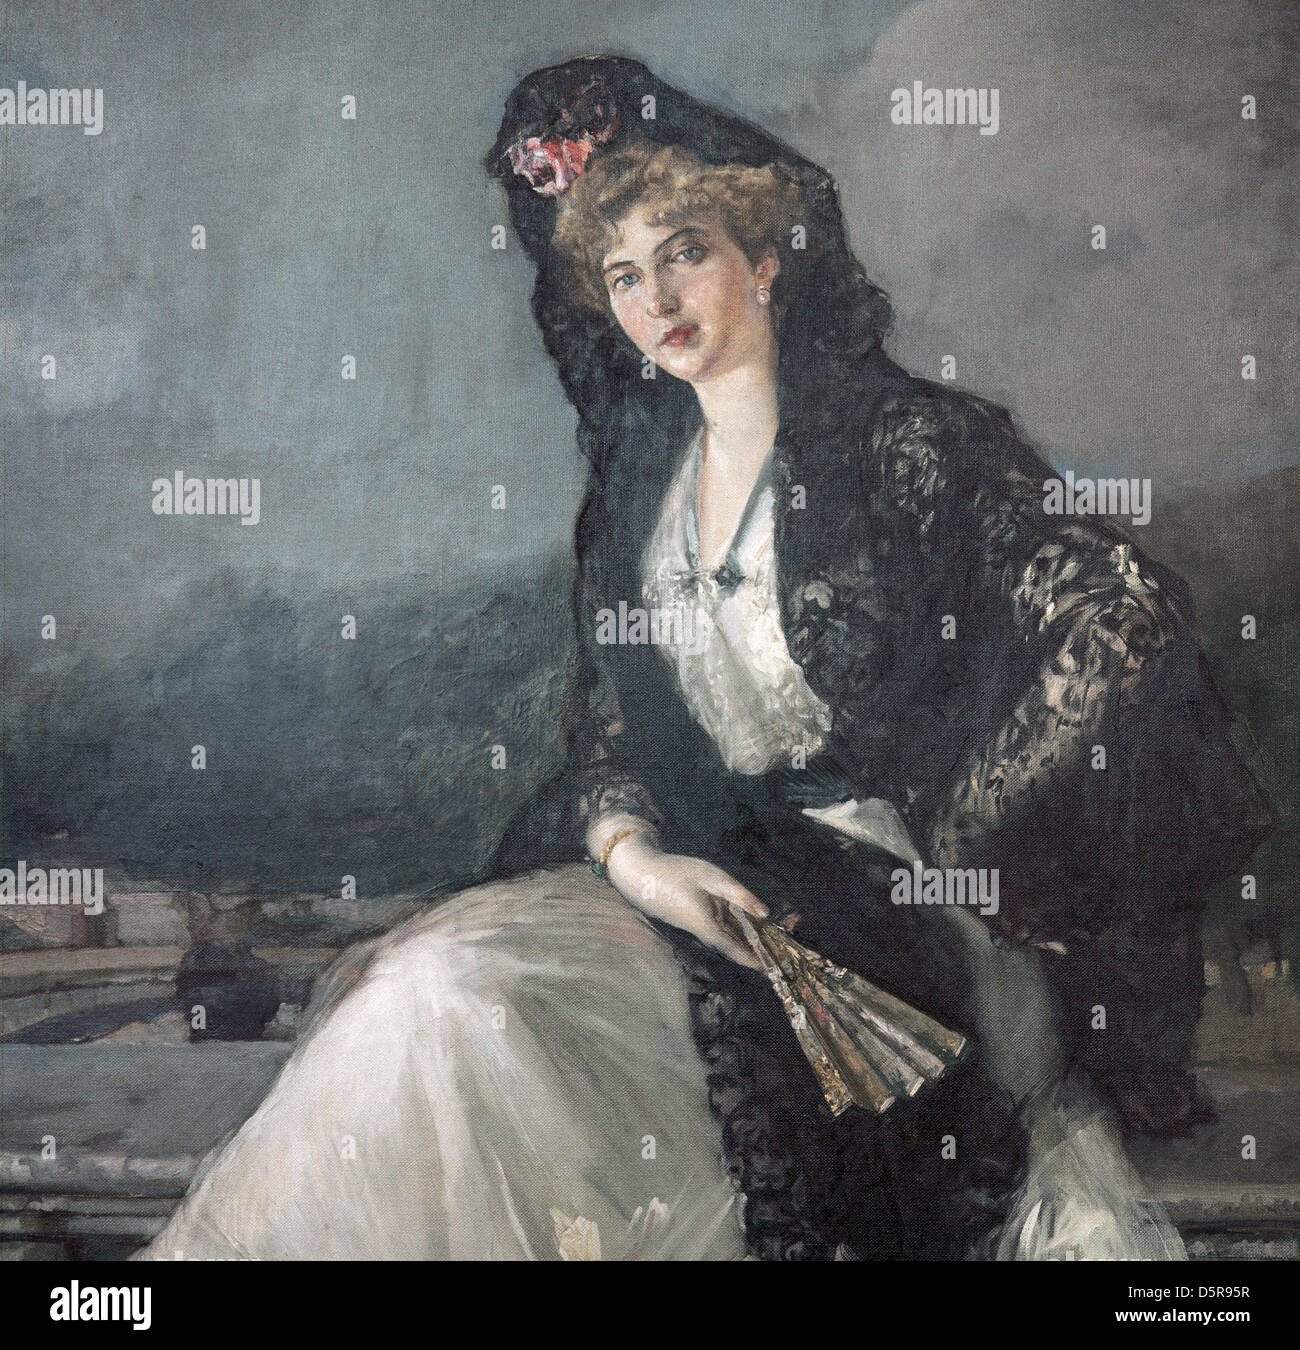 Victoria Eugenia di Battenberg (1887-1969), regina consorte del Re Alfonso XIII di Spagna. Ritratto di Joaquin Sorolla (1863-1923) Foto Stock